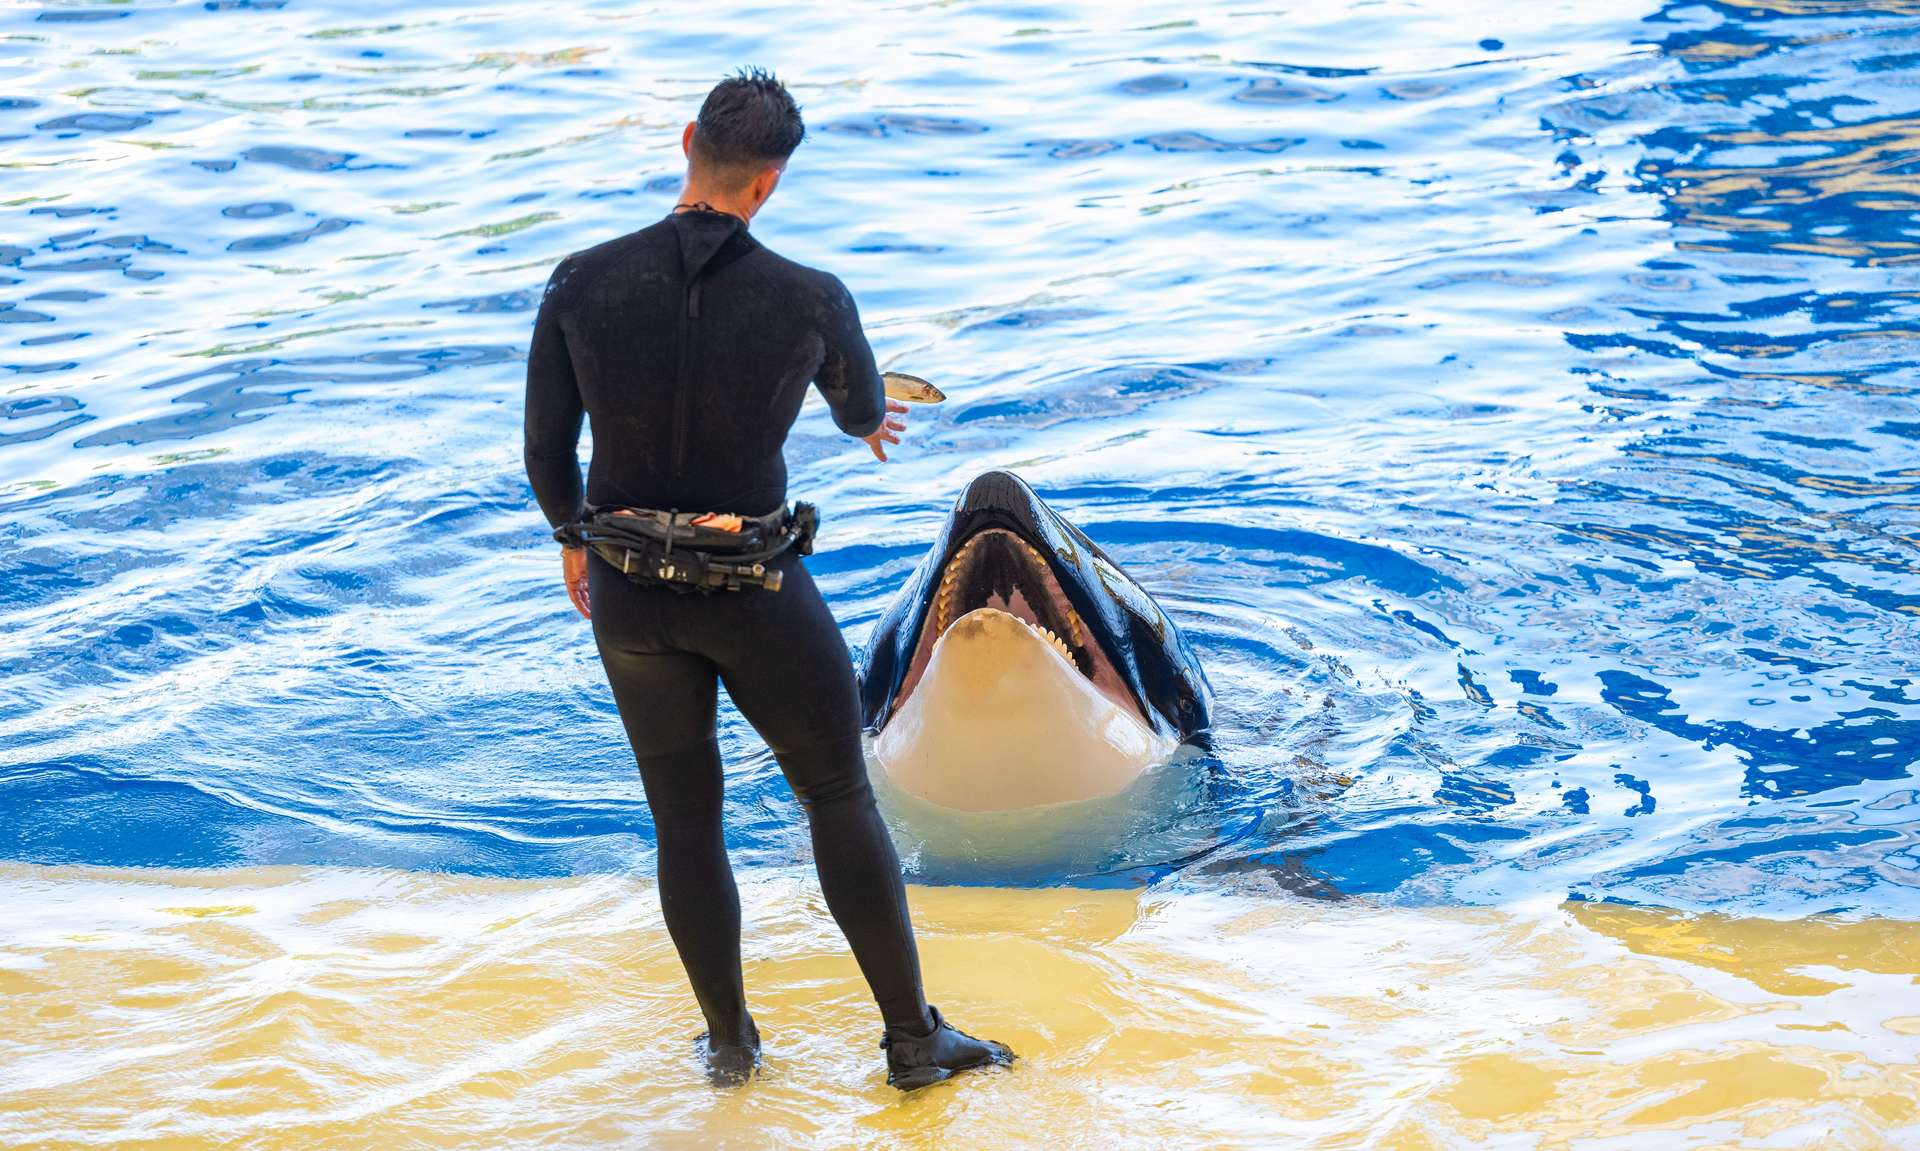 L’« exfiltration » des orques de Marineland vers le Japon dans des conditions dégradées inquiète